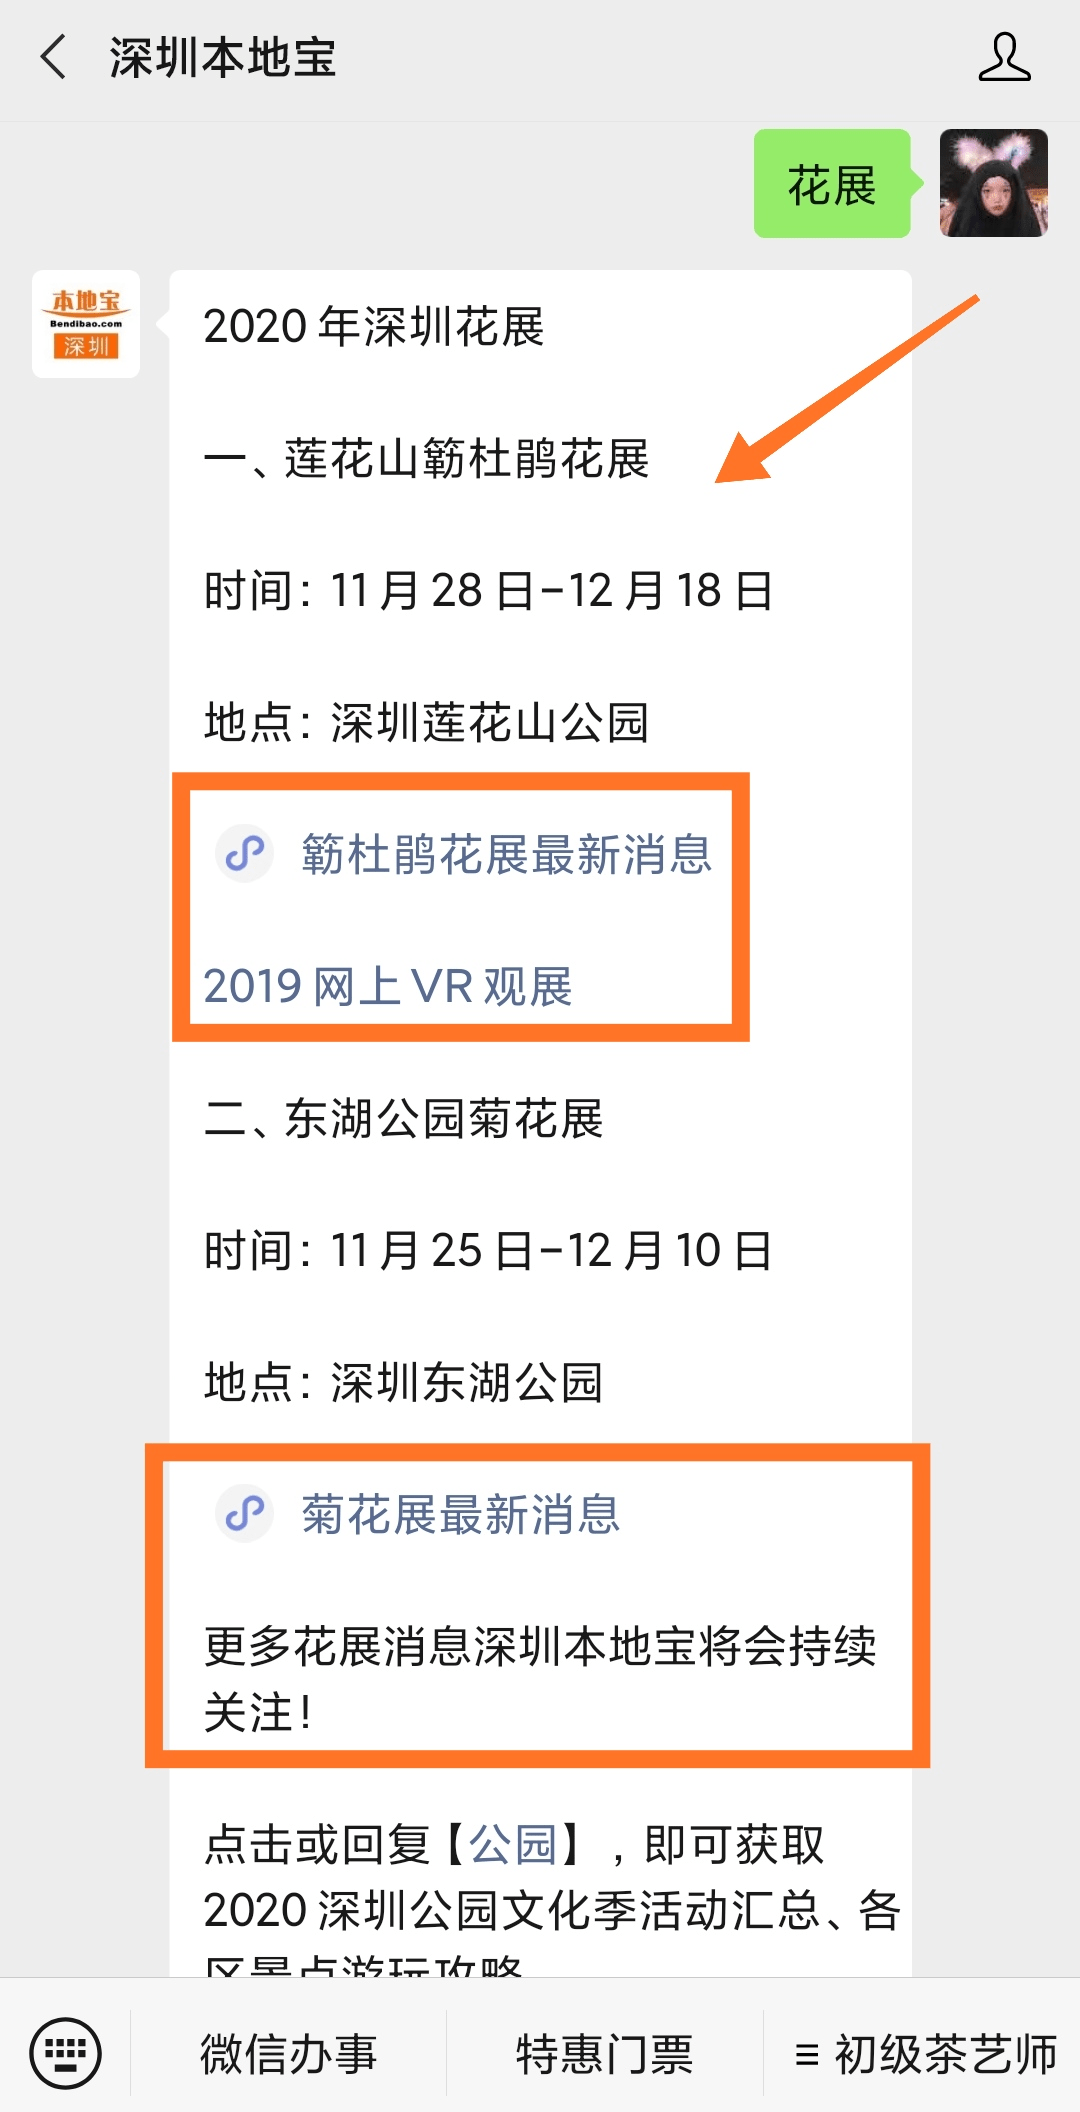 米乐娱乐官网|
2020深圳菊花展什么时候开始(图1)